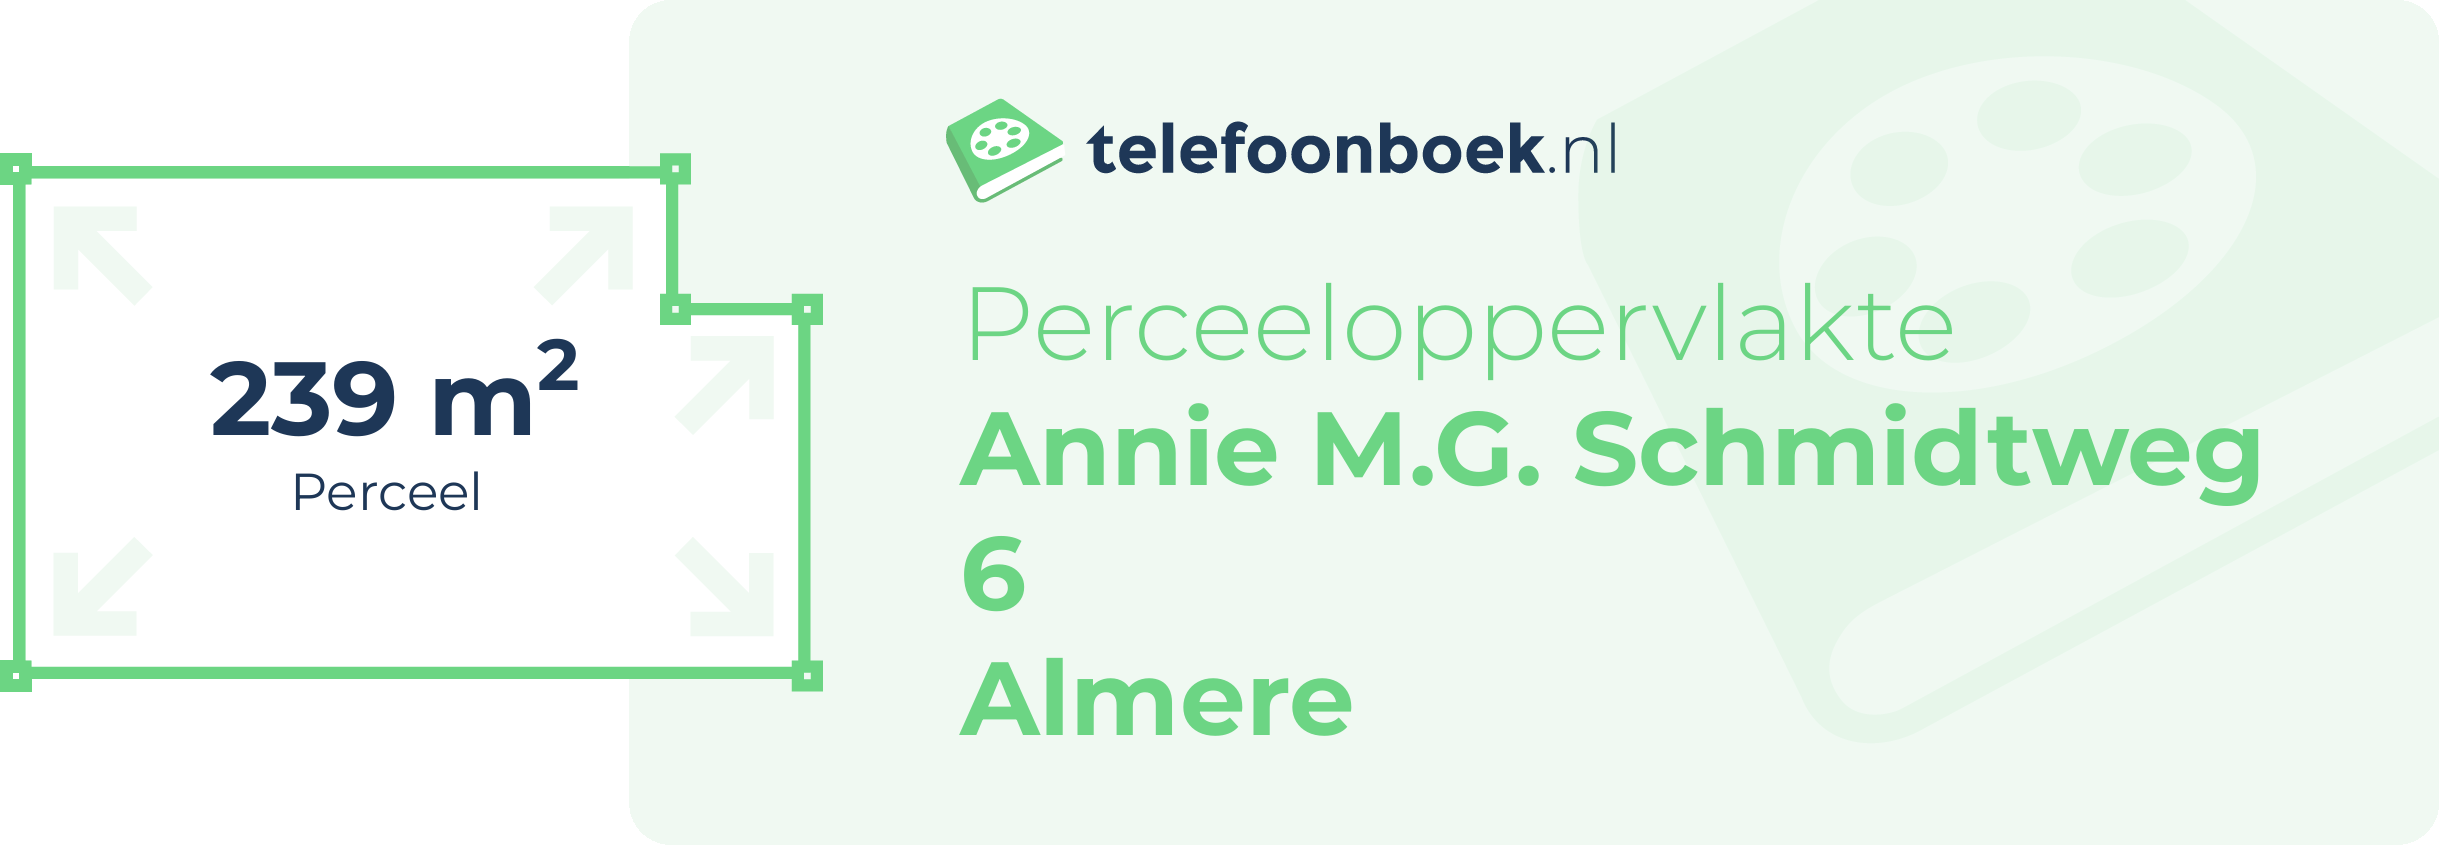 Perceeloppervlakte Annie M.G. Schmidtweg 6 Almere